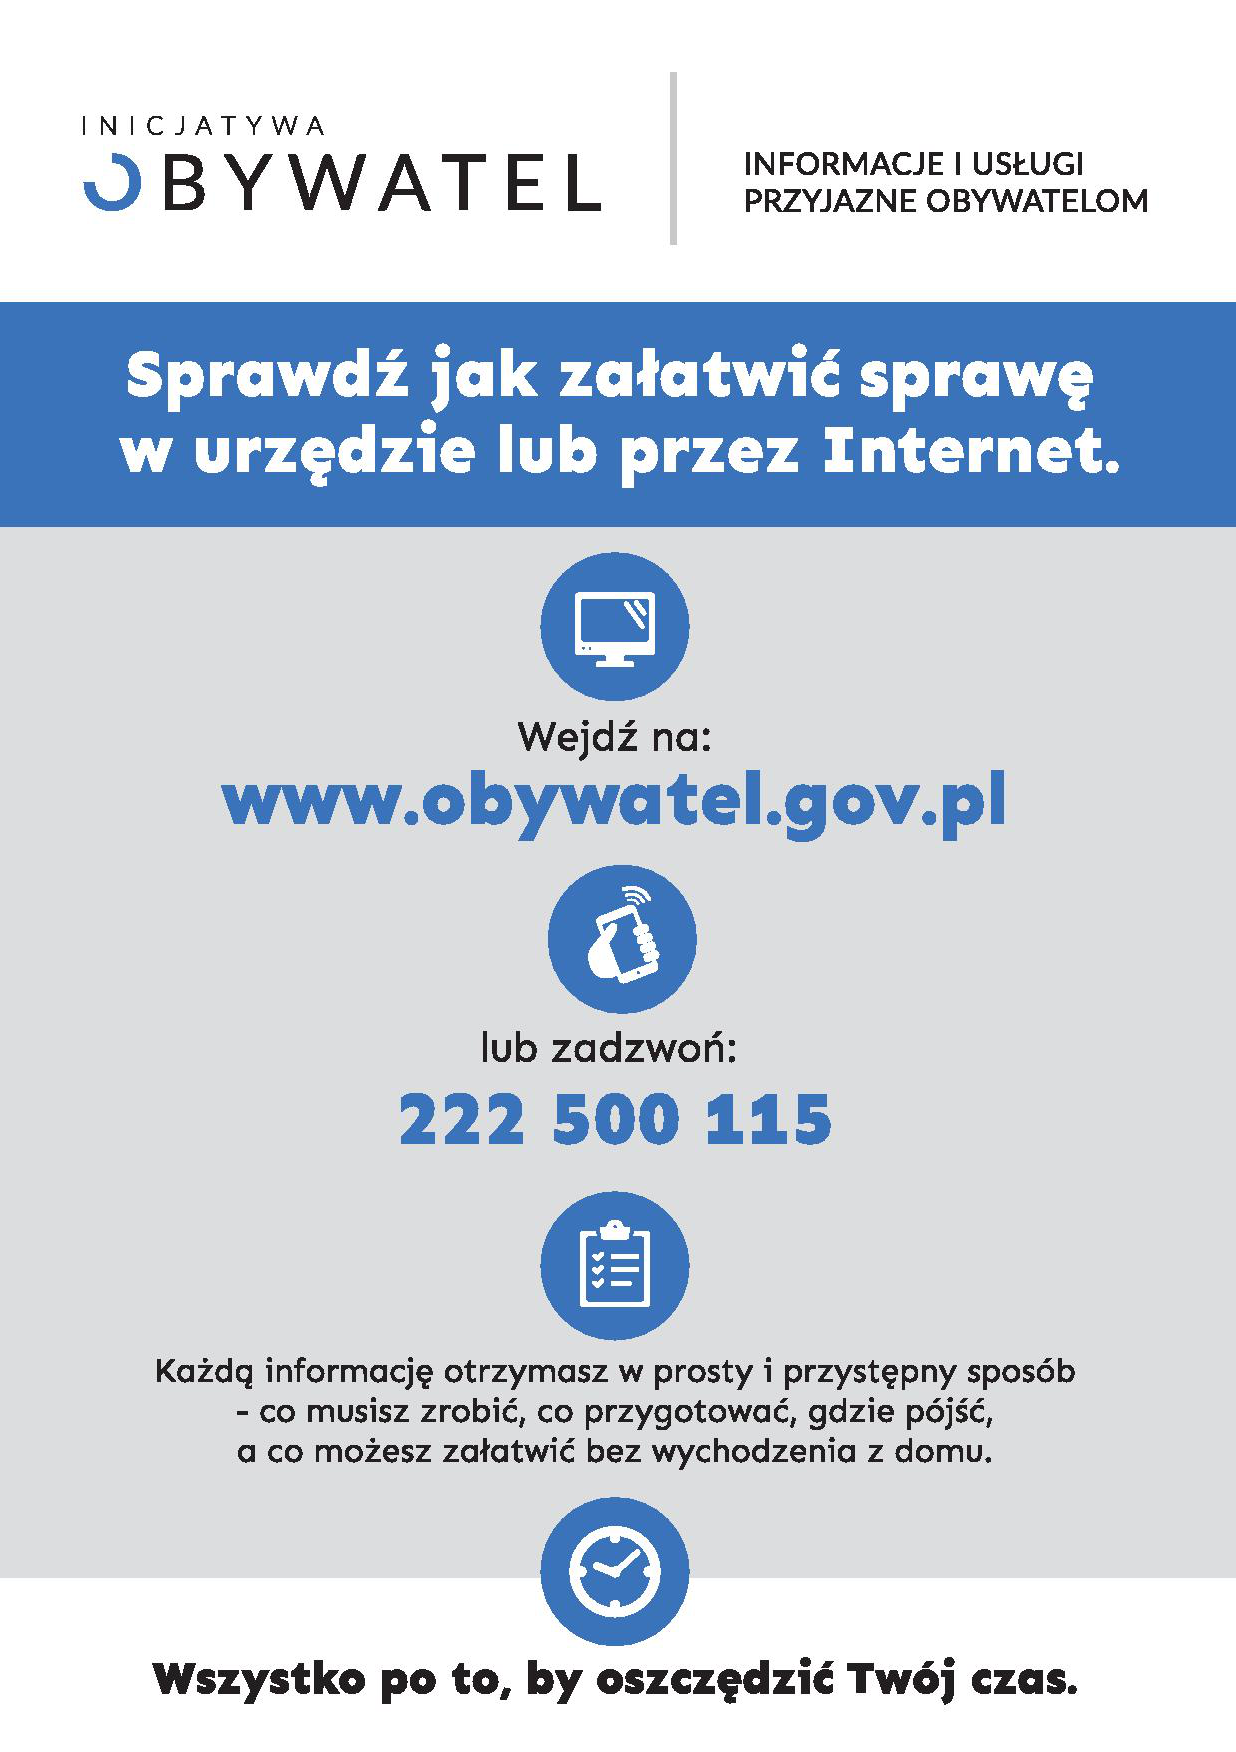 Platak sprawdź jak załatwić sprawę przez internet lub w urzędzie na stronie www.obywatel.gov.pl